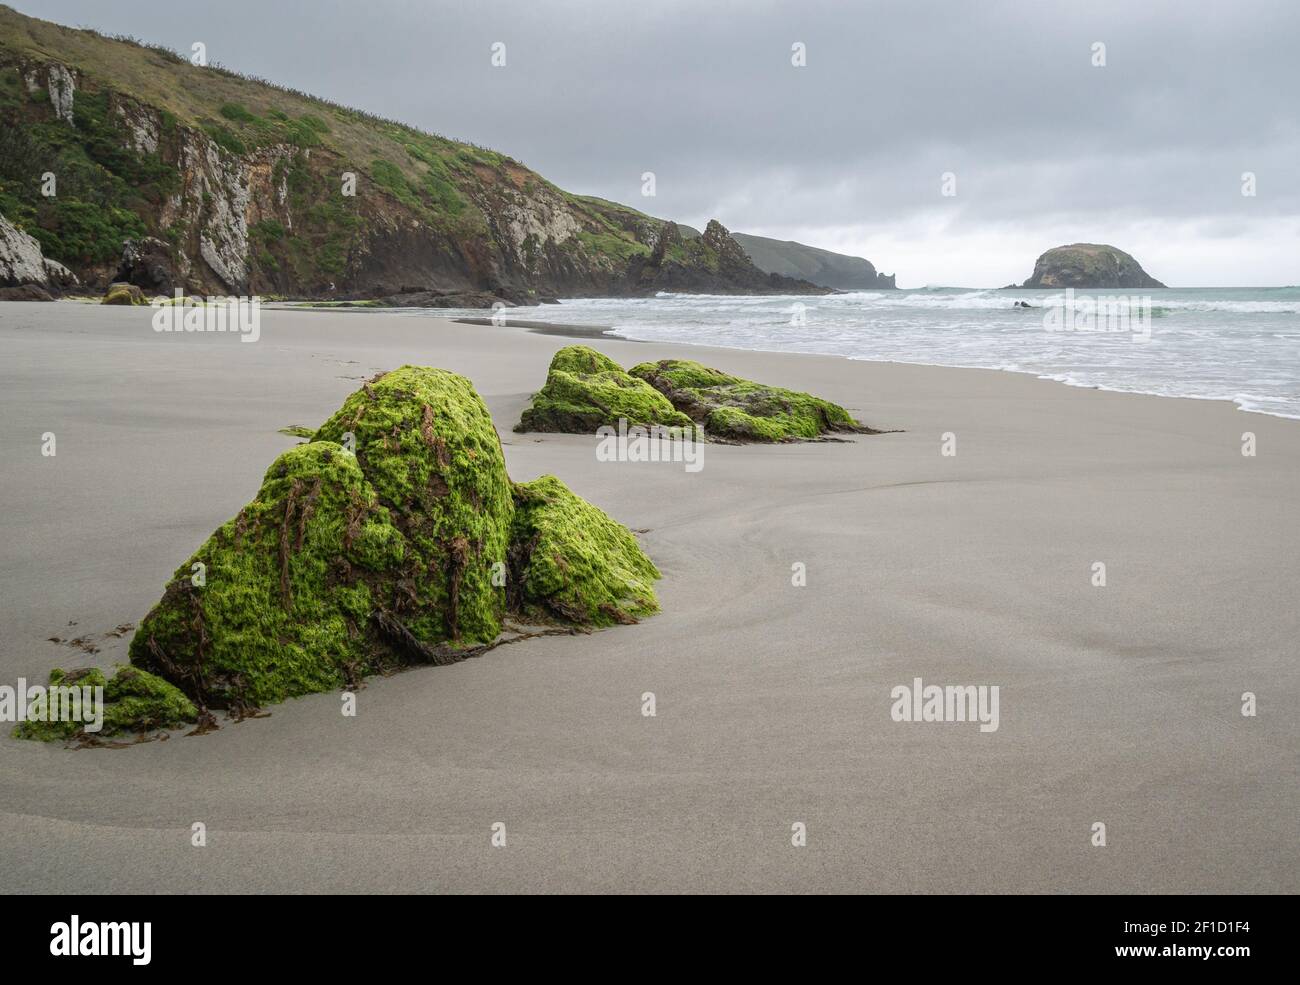 Spiaggia remota con rocce mussose in primo piano. Scatto effettuato durante la giornata di overcast a Allans Beach, Dunedin, Penisola di Otago, Nuova Zelanda Foto Stock